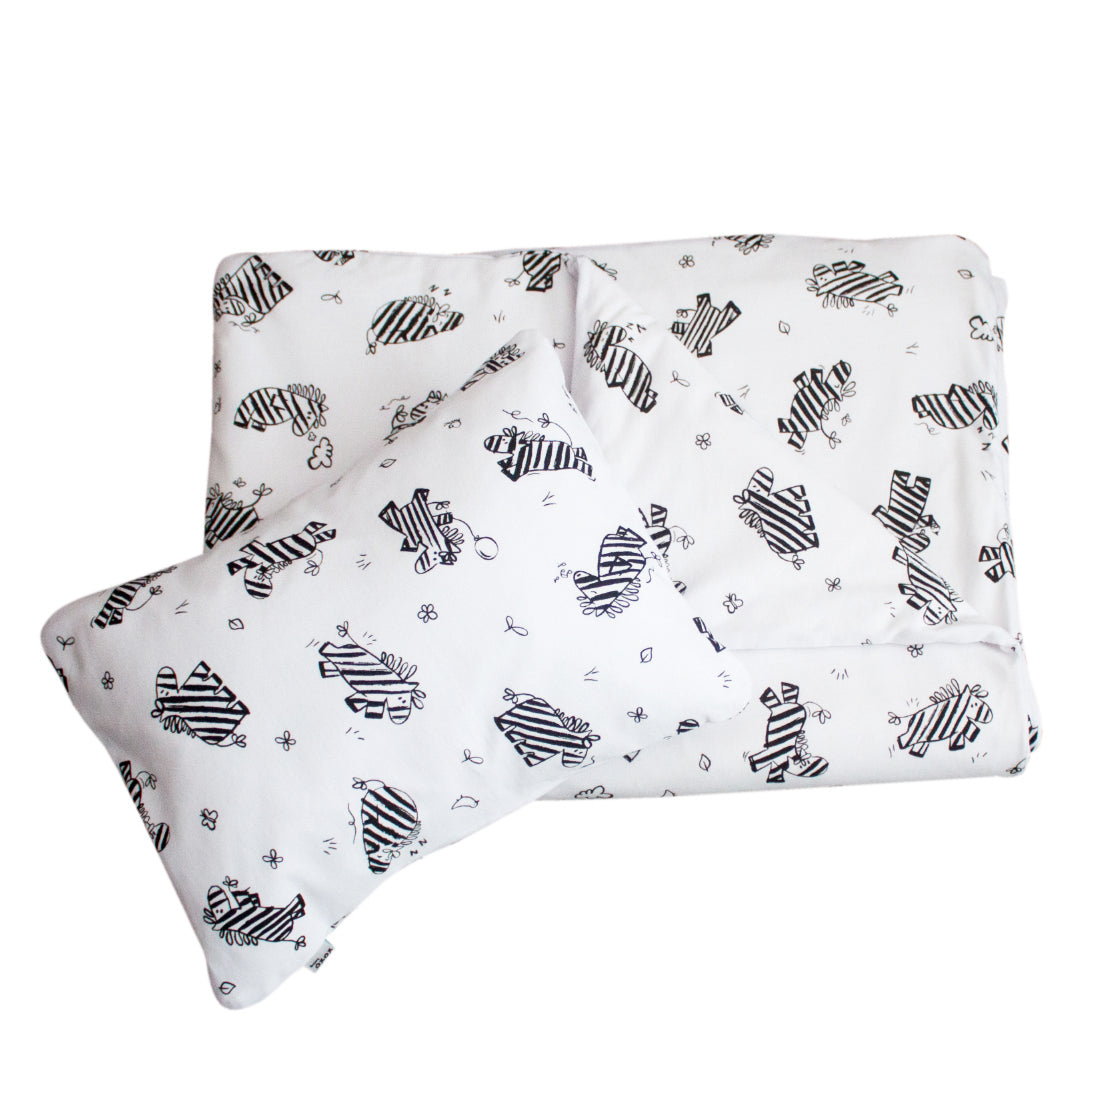 Duvet Cover and Pillowcase - Zebra